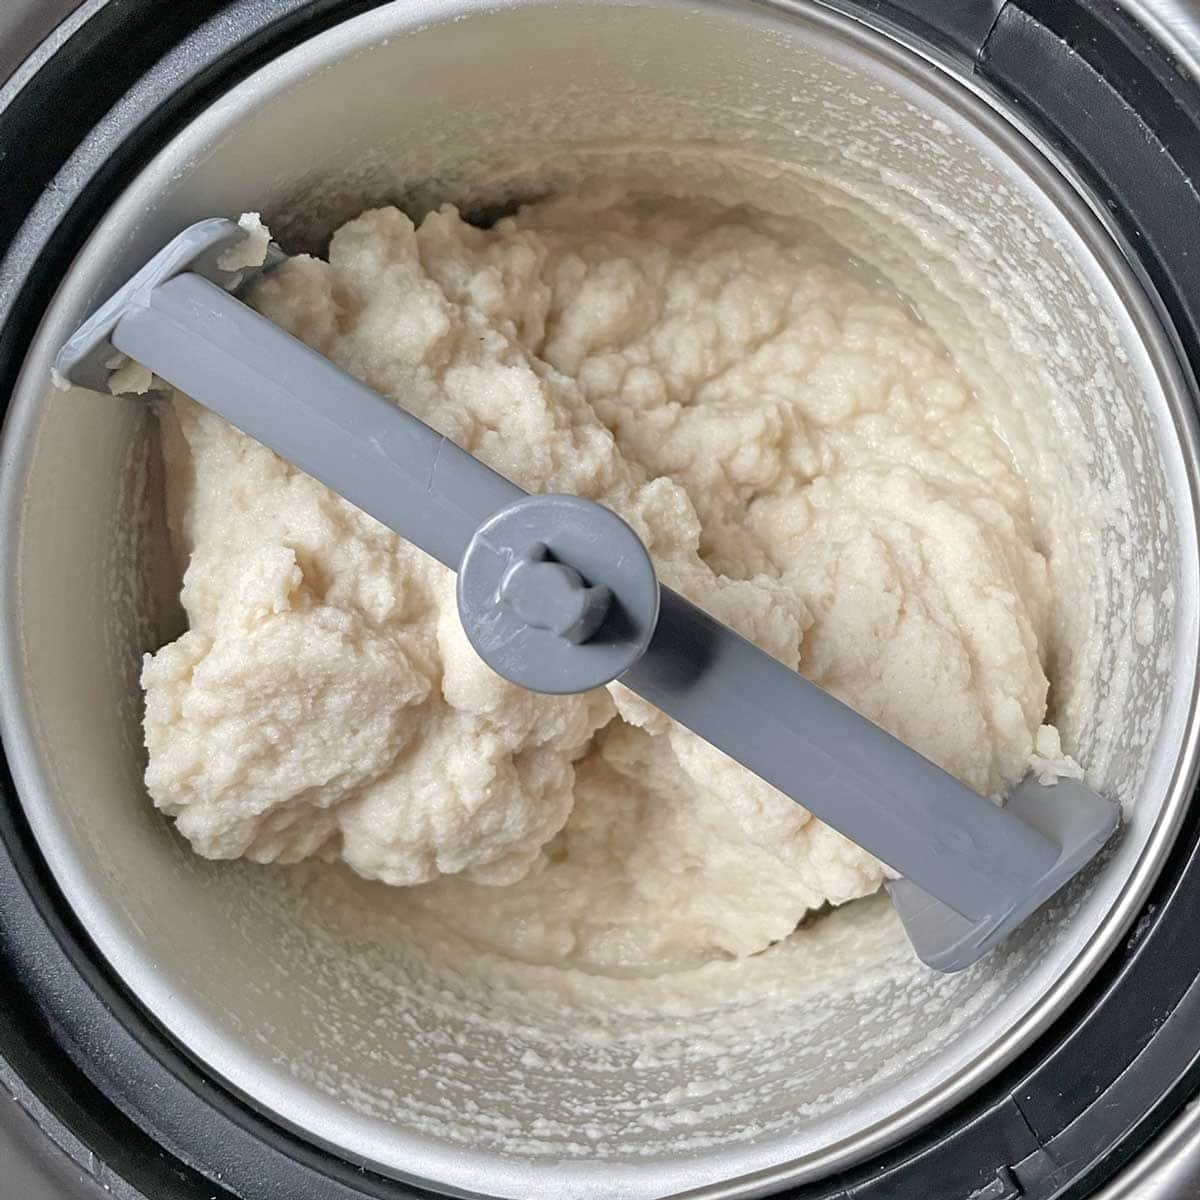 Vegan vanilla ice cream churning.